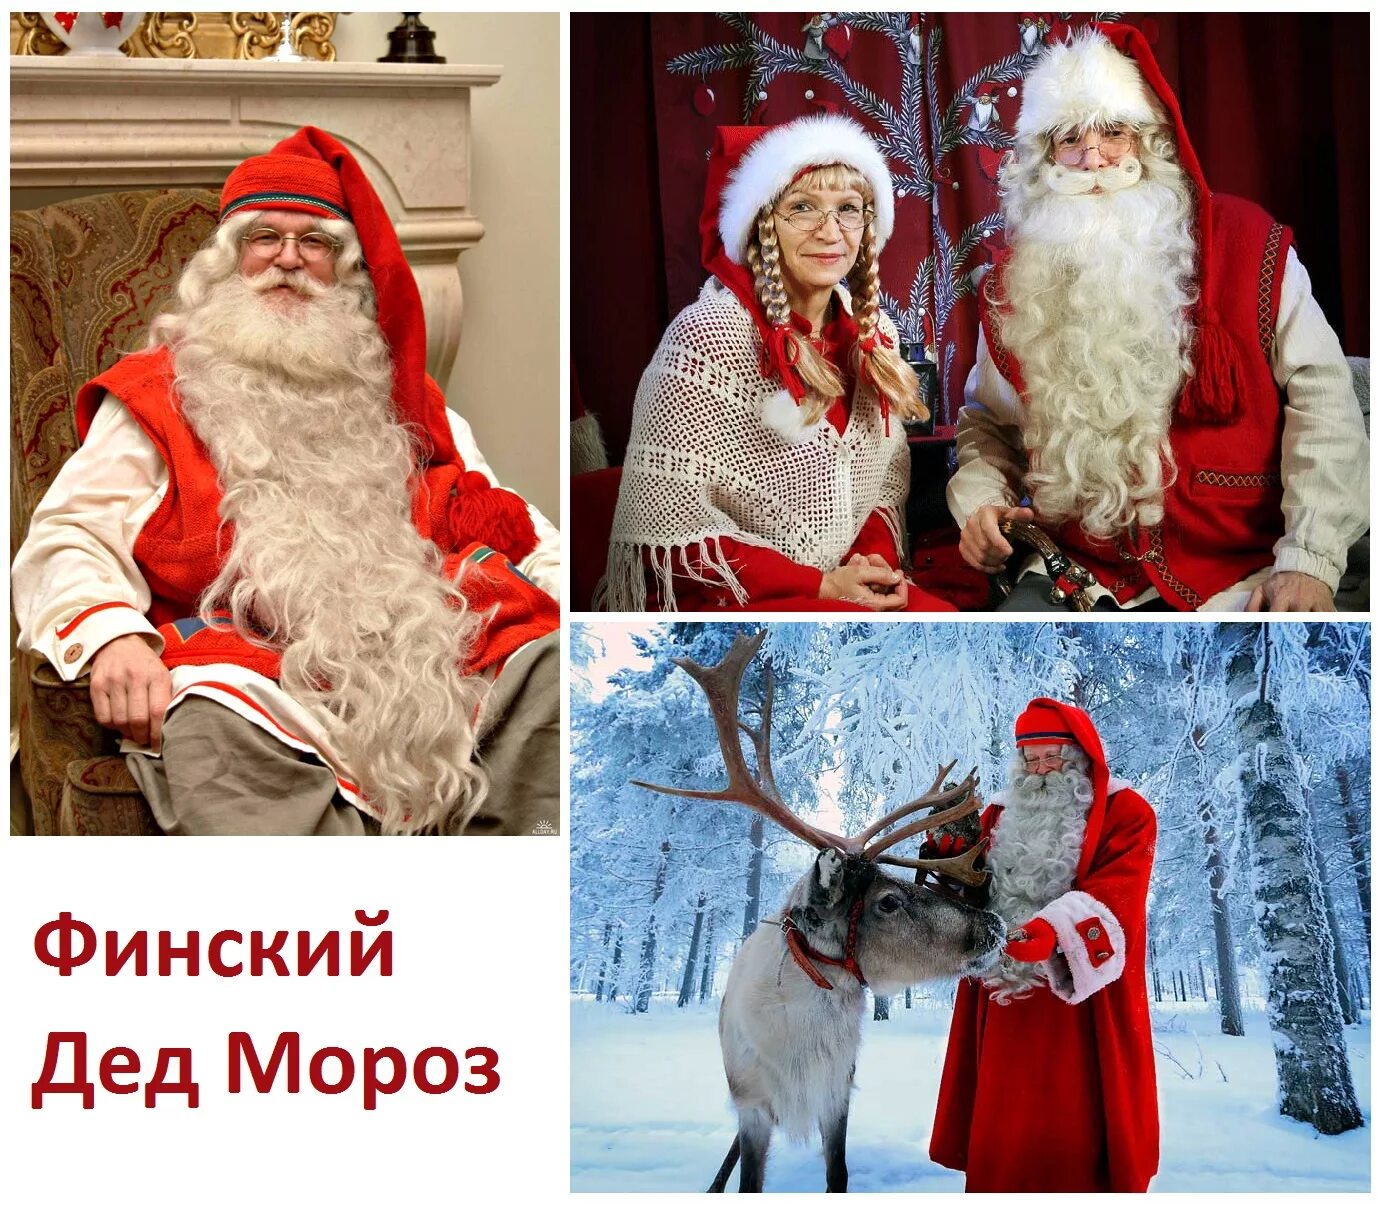 Финский дед Мороз йоулупукки. Дед Мороз в Финляндии йоулупукки. Муори жена йоулупукки.